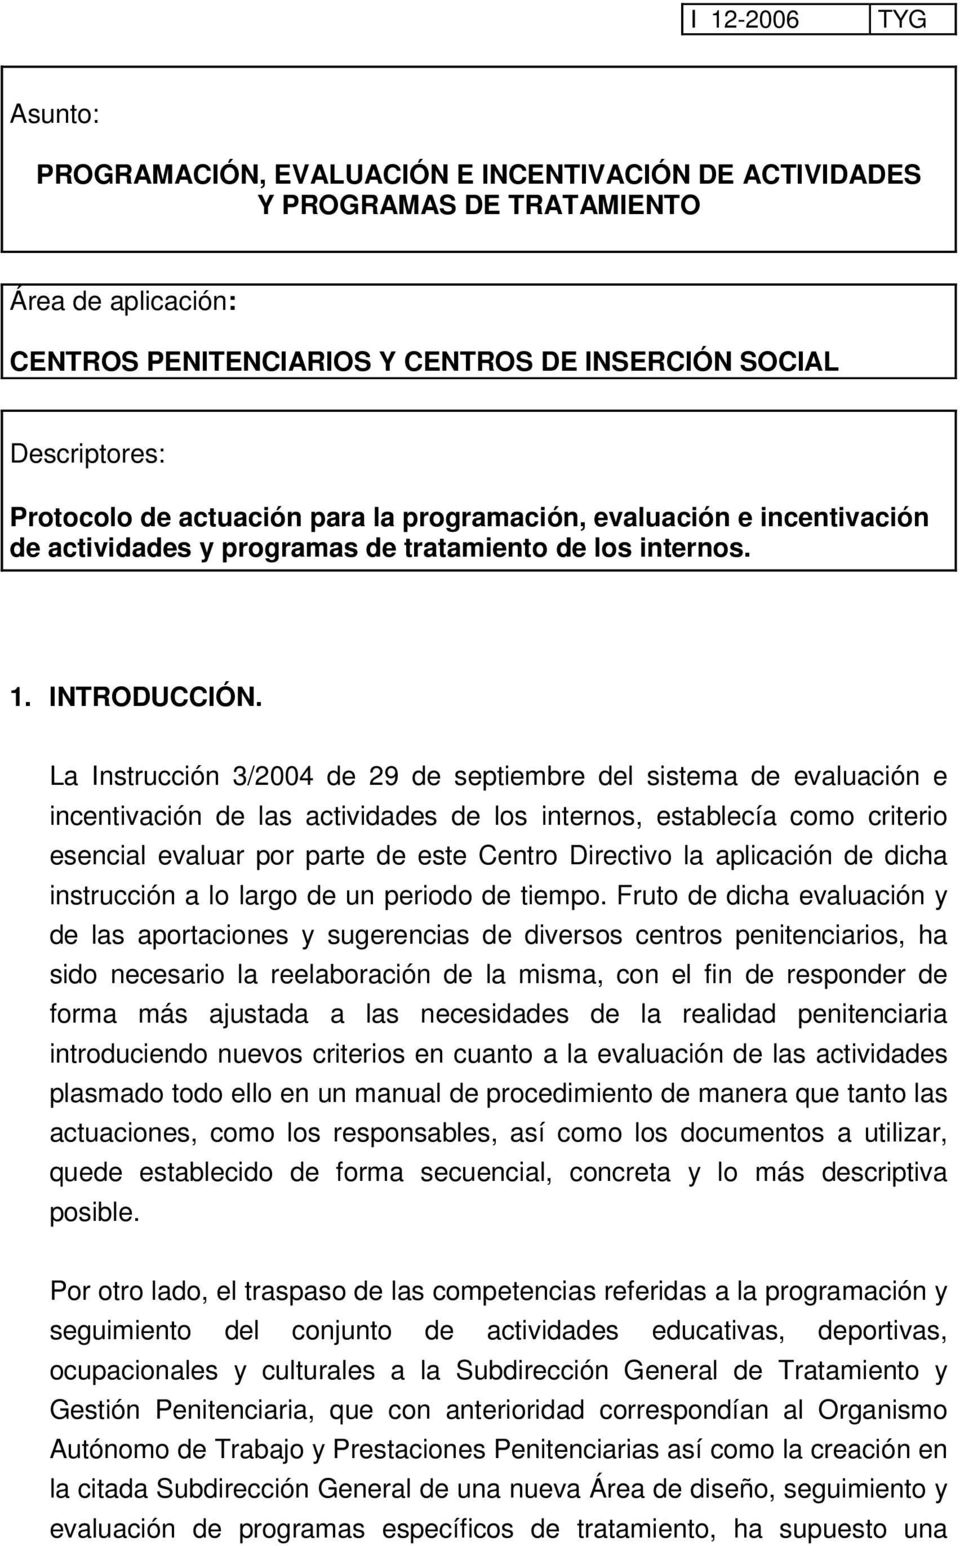 La Instrucción 3/2004 de 29 de septiembre del sistema de evaluación e incentivación de las actividades de los internos, establecía como criterio esencial evaluar por parte de este Centro Directivo la